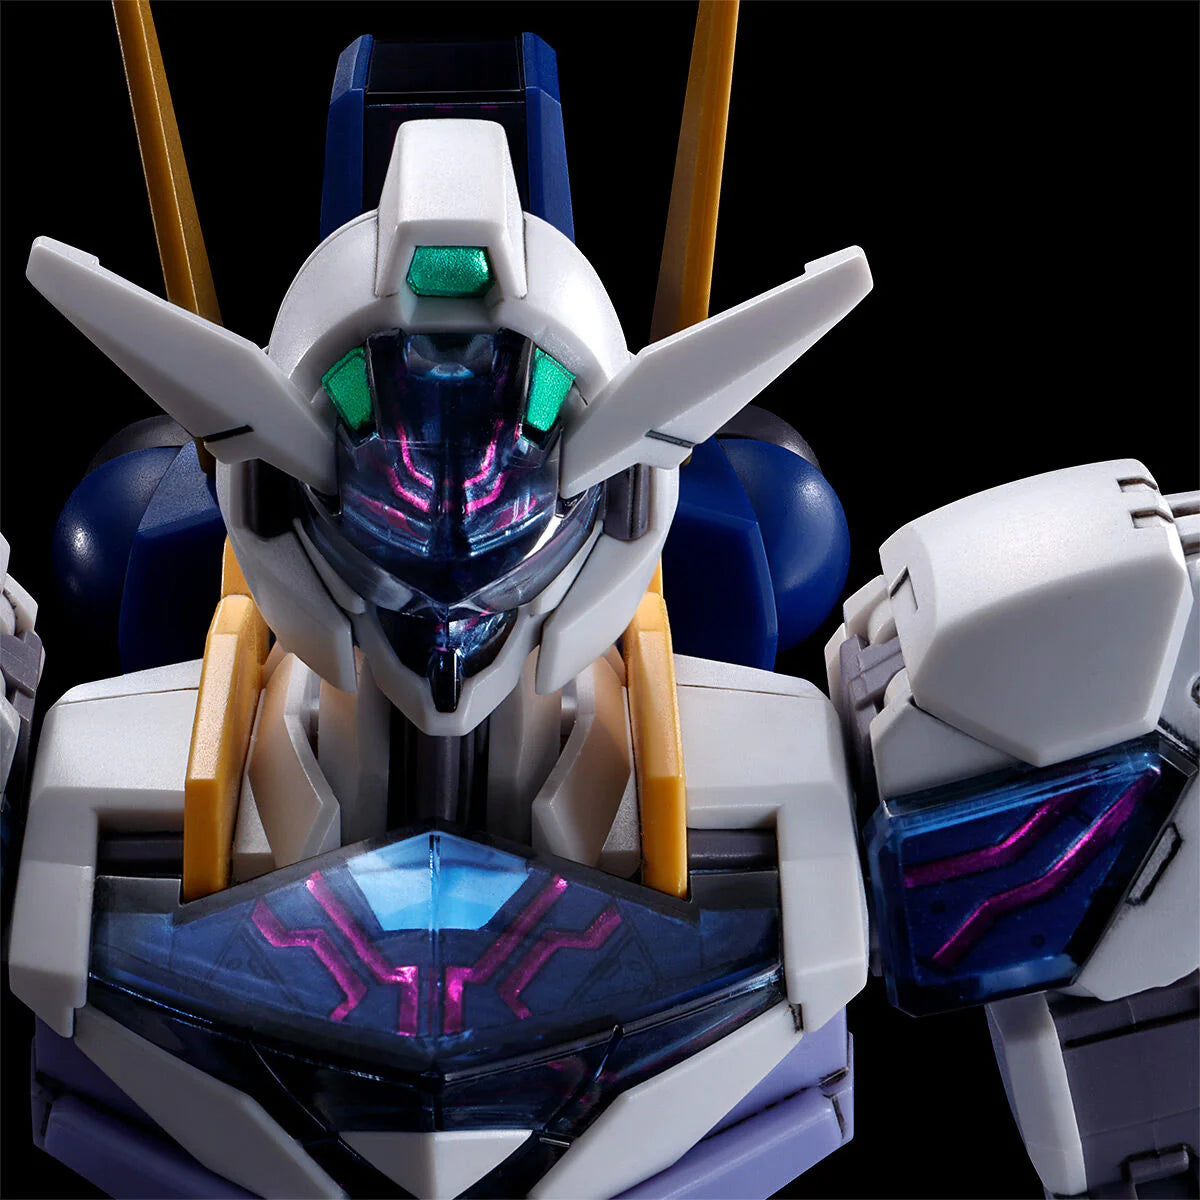 GUNDAM - HG 1/144 - Gundam Lfrith Jiu - Model Kit